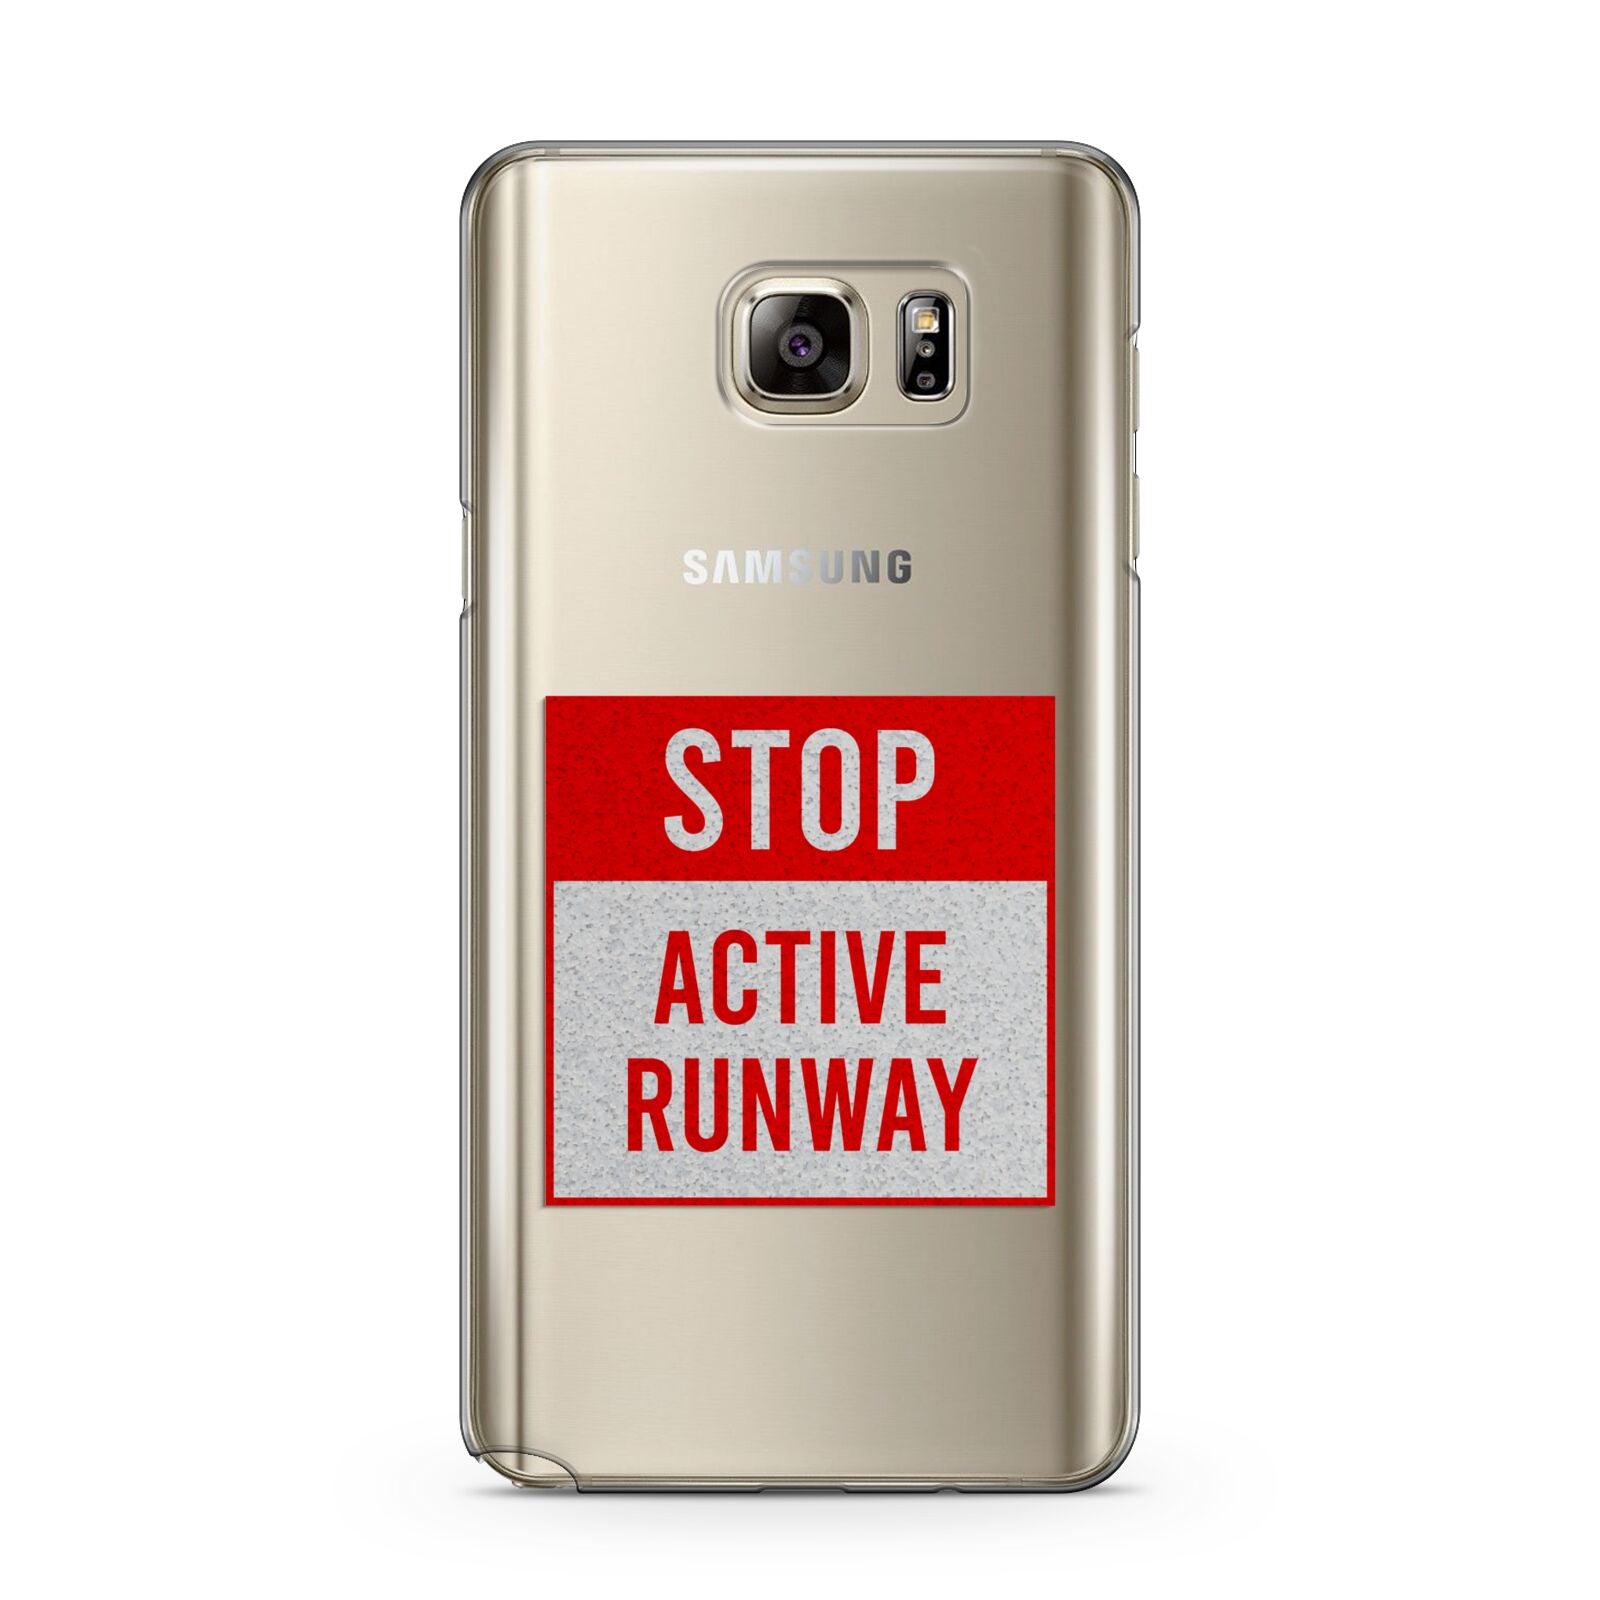 Stop Active Runway Samsung Galaxy Note 5 Case